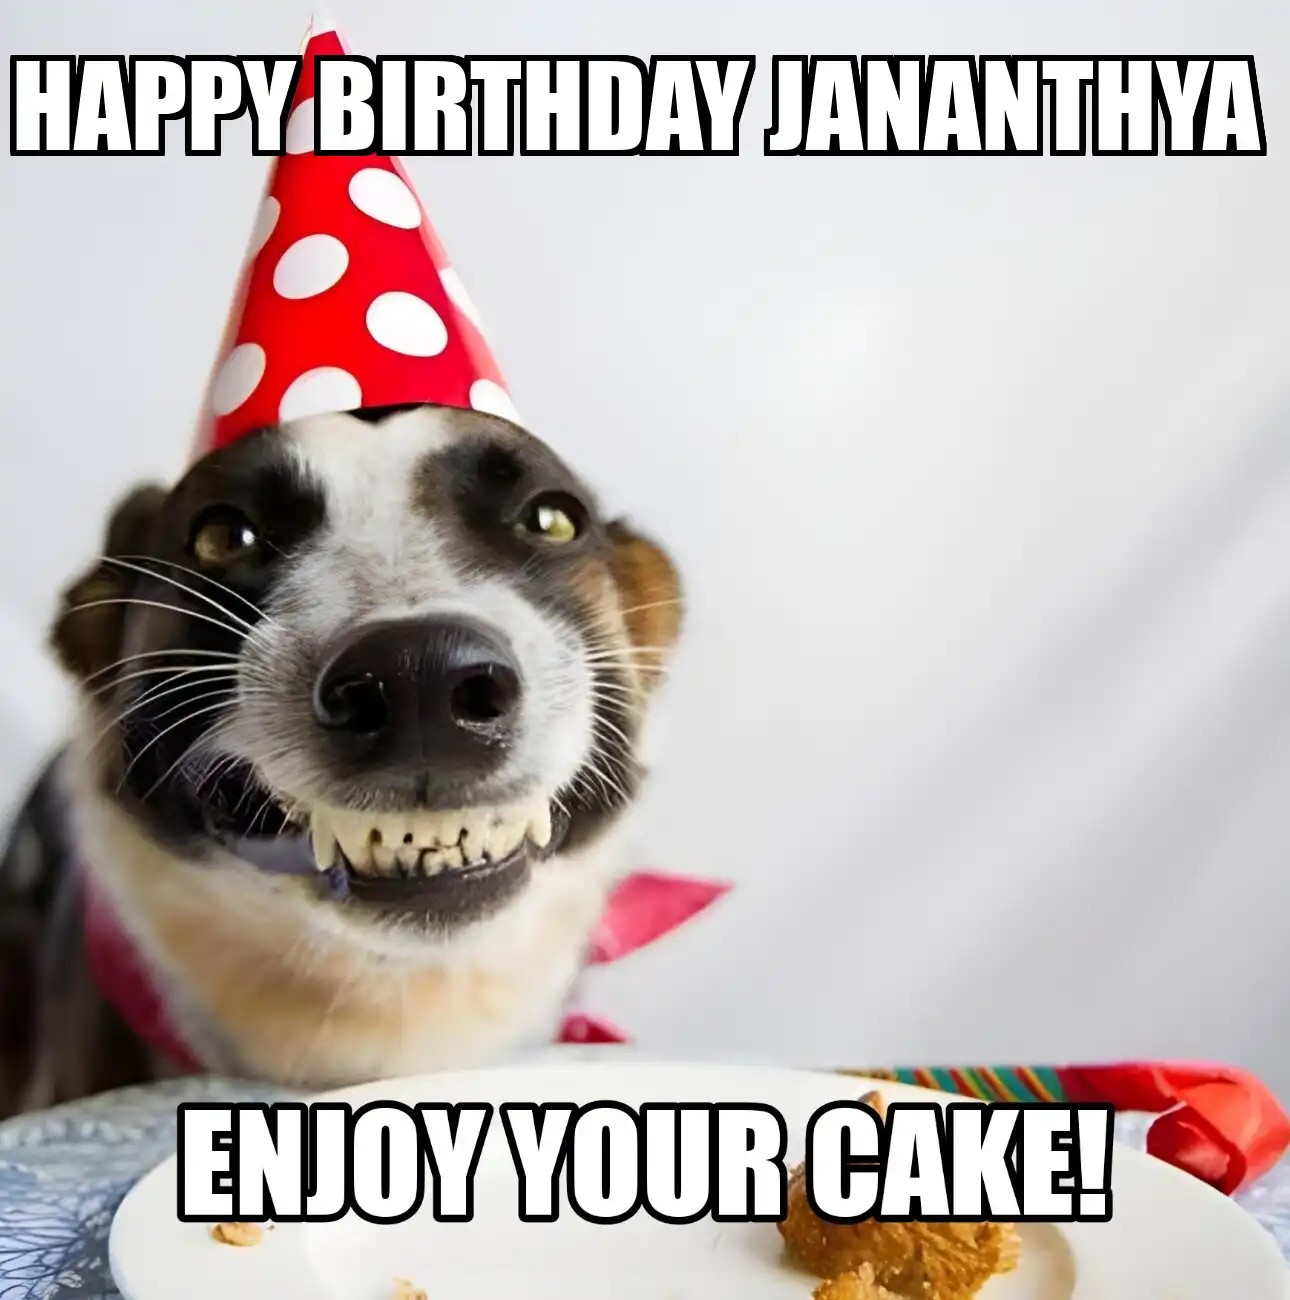 Happy Birthday Jananthya Enjoy Your Cake Dog Meme